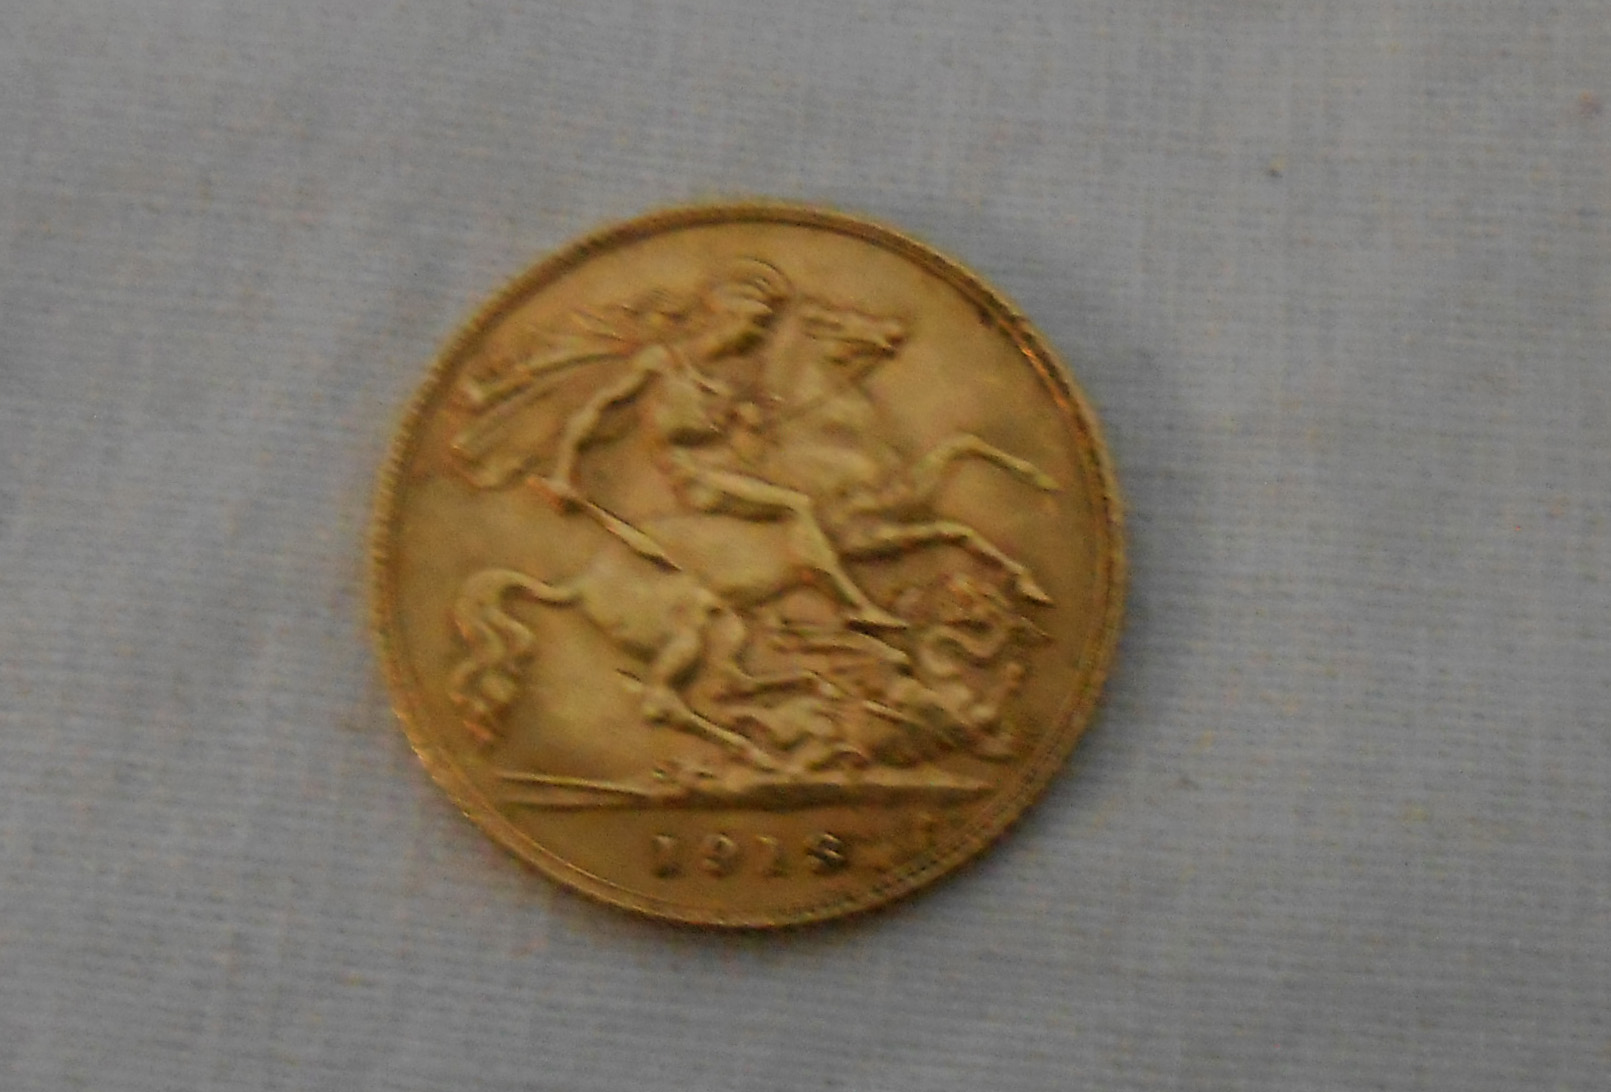 A 1913 gold Half Sovereign